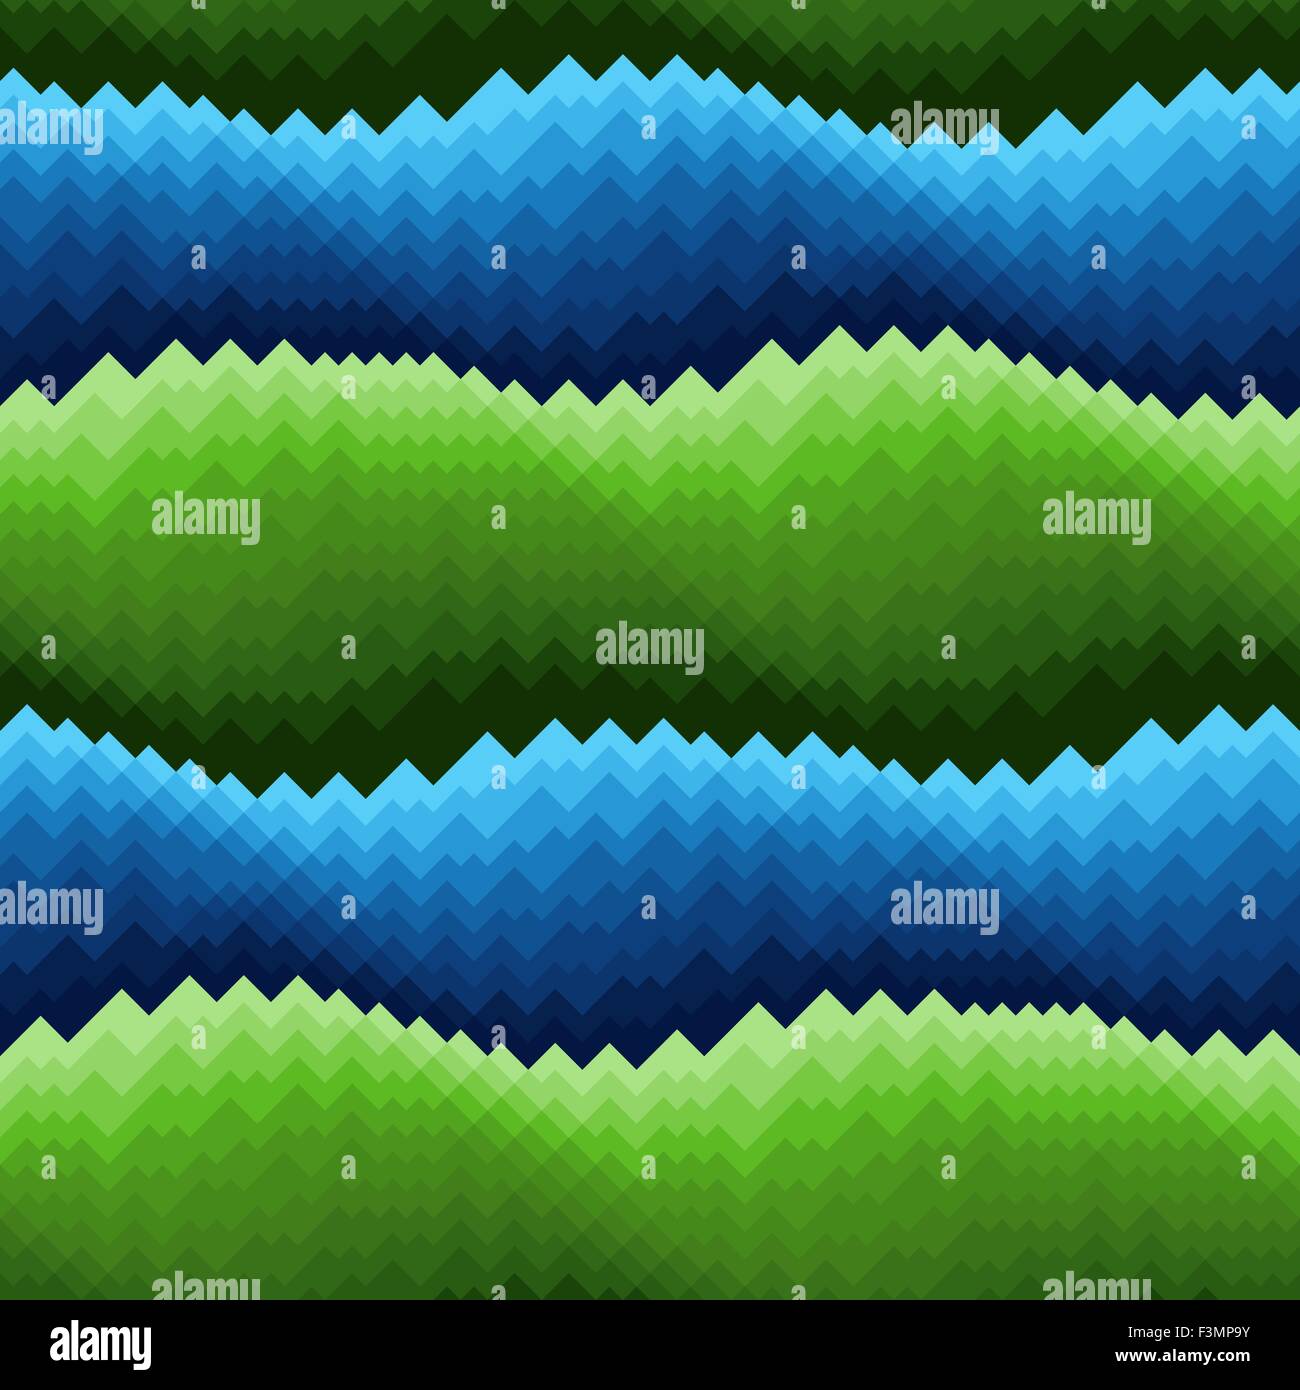 Bandes horizontales ondulées abstraites dans des tons bleu et vert, modèle vectoriel continu Illustration de Vecteur